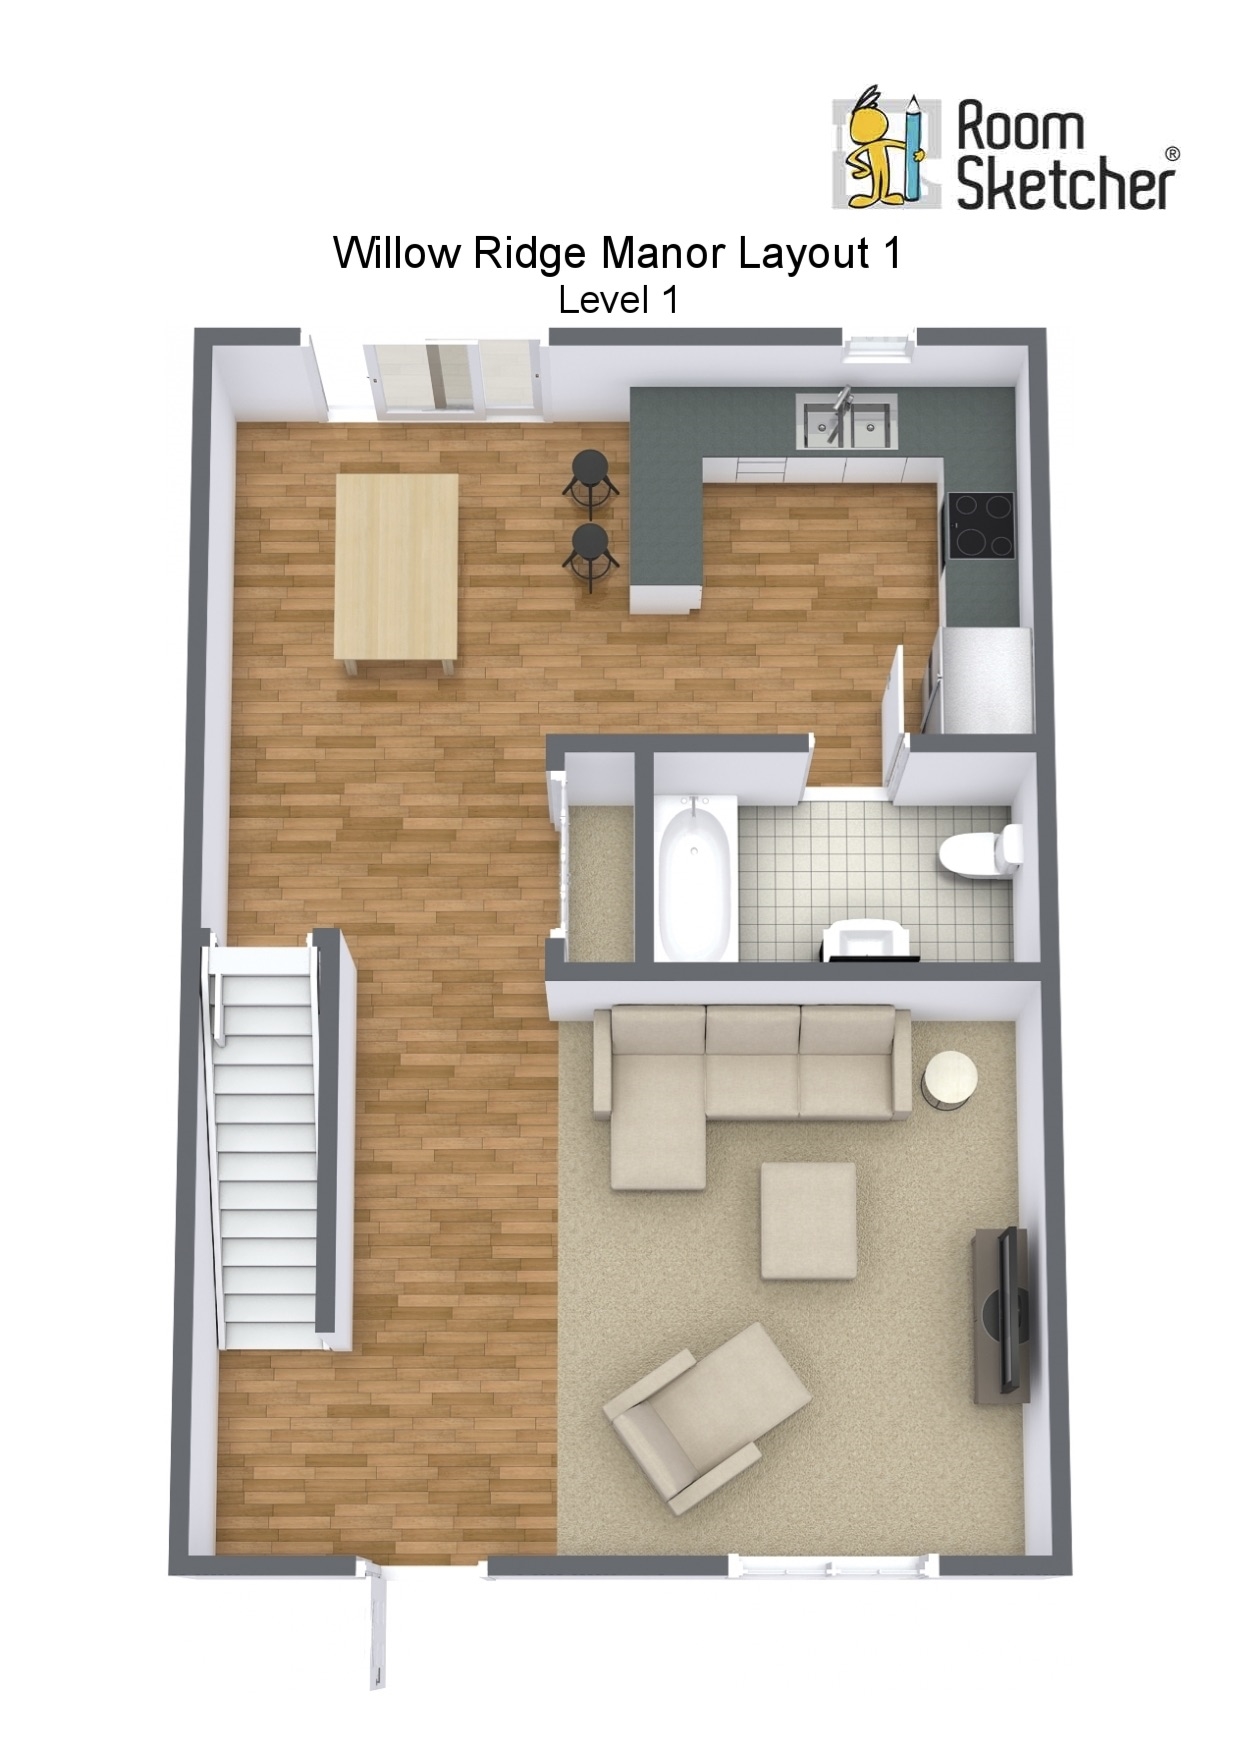 Floorplan letterhead - Willow Ridge Manor Layout 1 - Level 1 - 3D Floor Plan.jpg